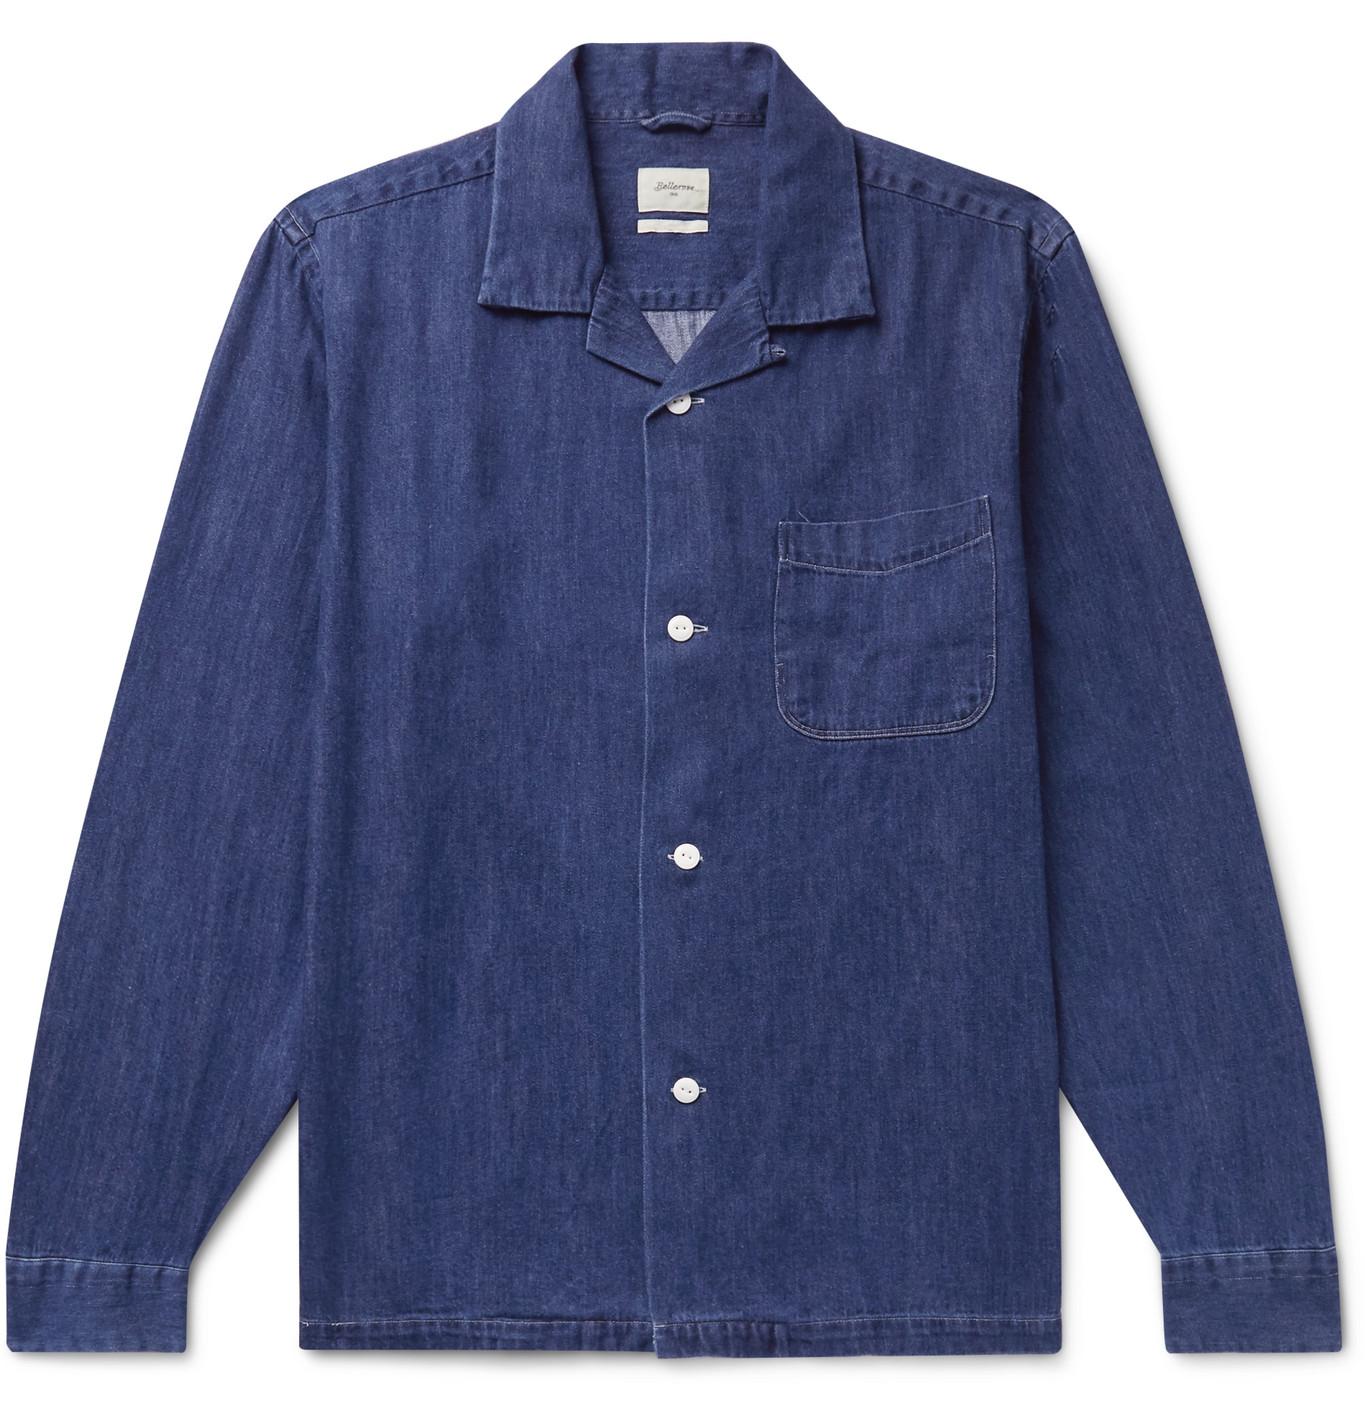 Bellerose Camp-collar Denim Shirt Jacket in Blue for Men - Lyst